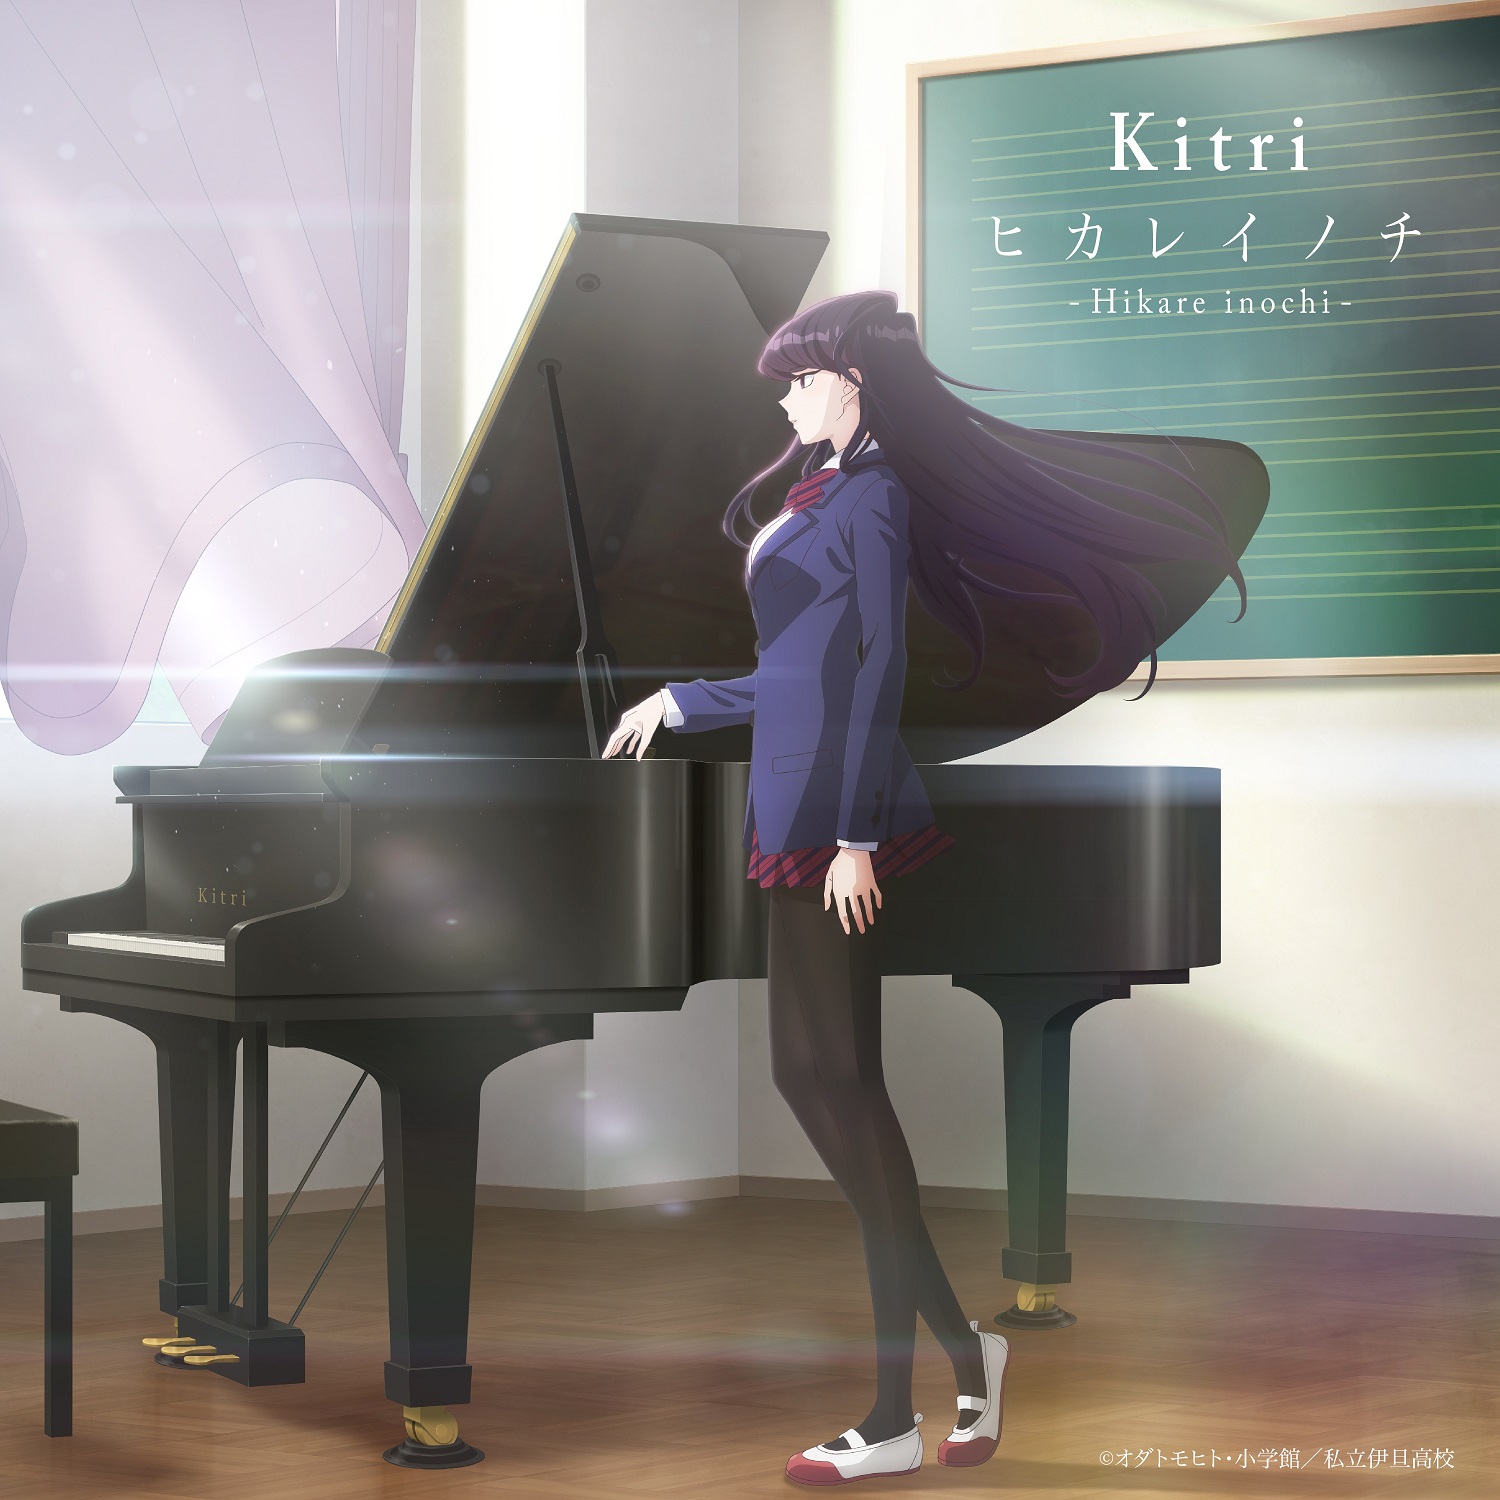 Kitri『古見さんは、コミュ症です。』エンディングテーマ「ヒカレイノチ」のCDリリース！手元動画シリーズ“Kitri & The PIANO”も国内外で大反響のサブ画像2